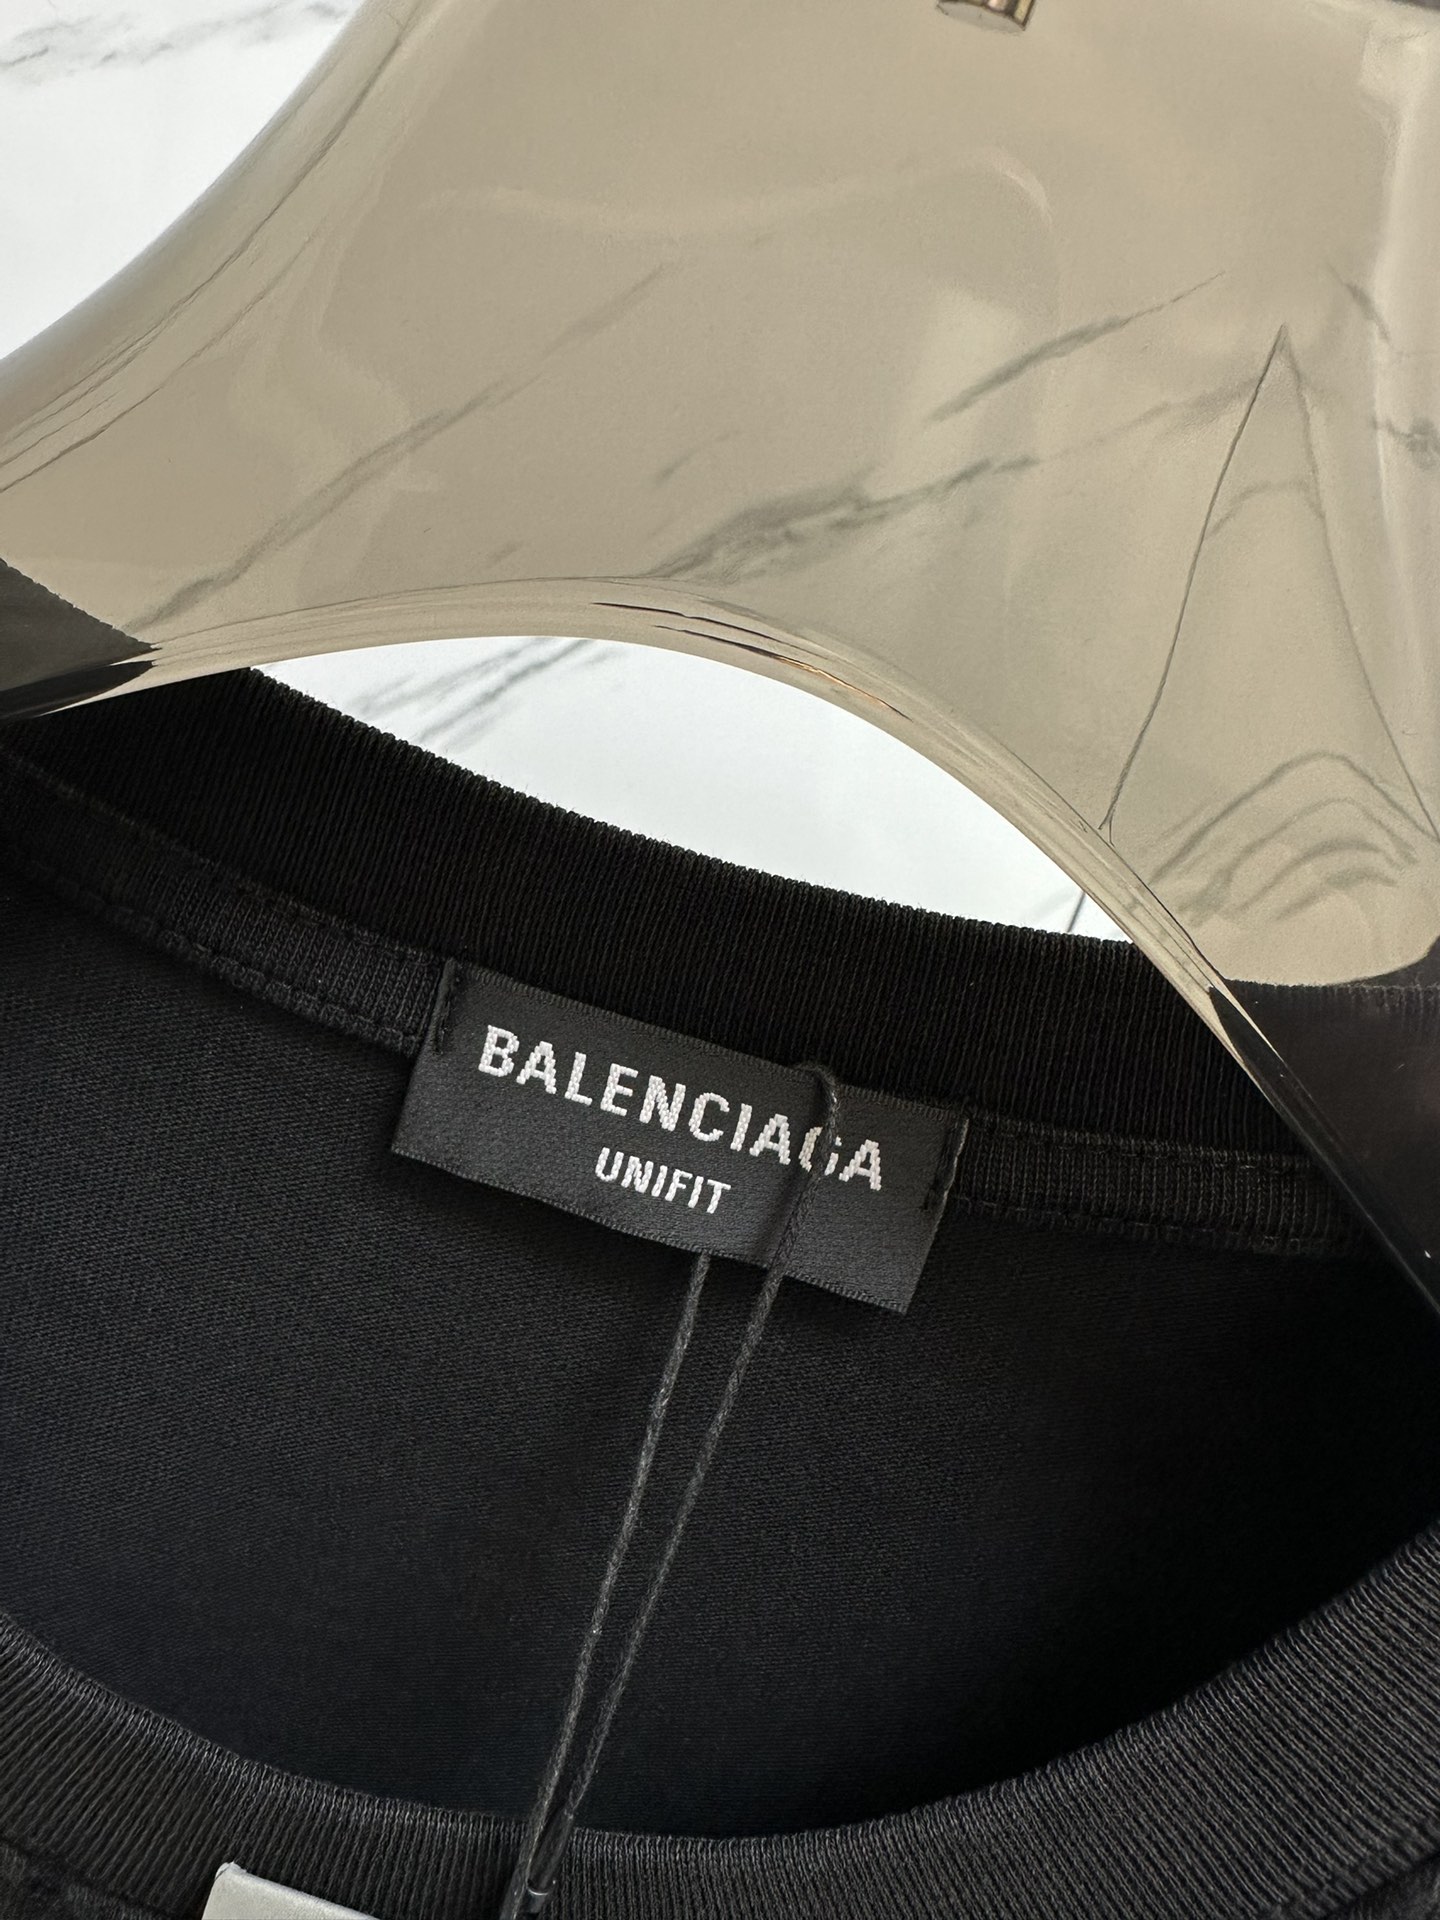 NEW夏の バレンシアガ 半袖tシャツコピー トップス 品質保証 プリント ゆったり 男女兼用 ファッション ブラック_3